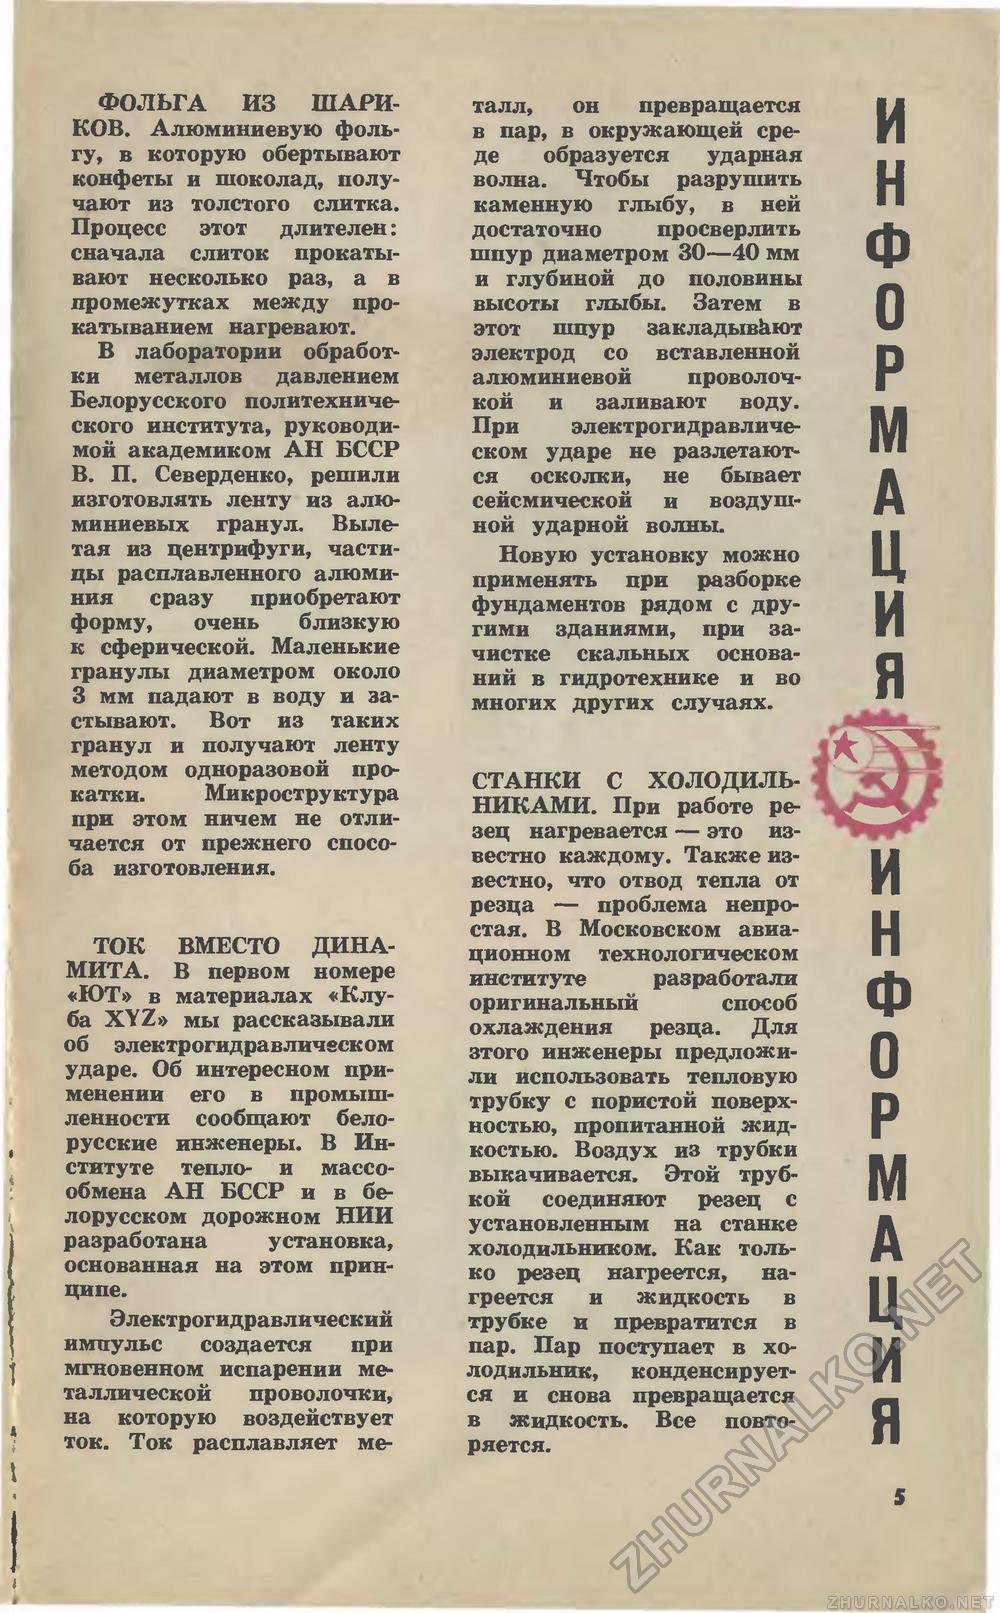   1973-03,  7